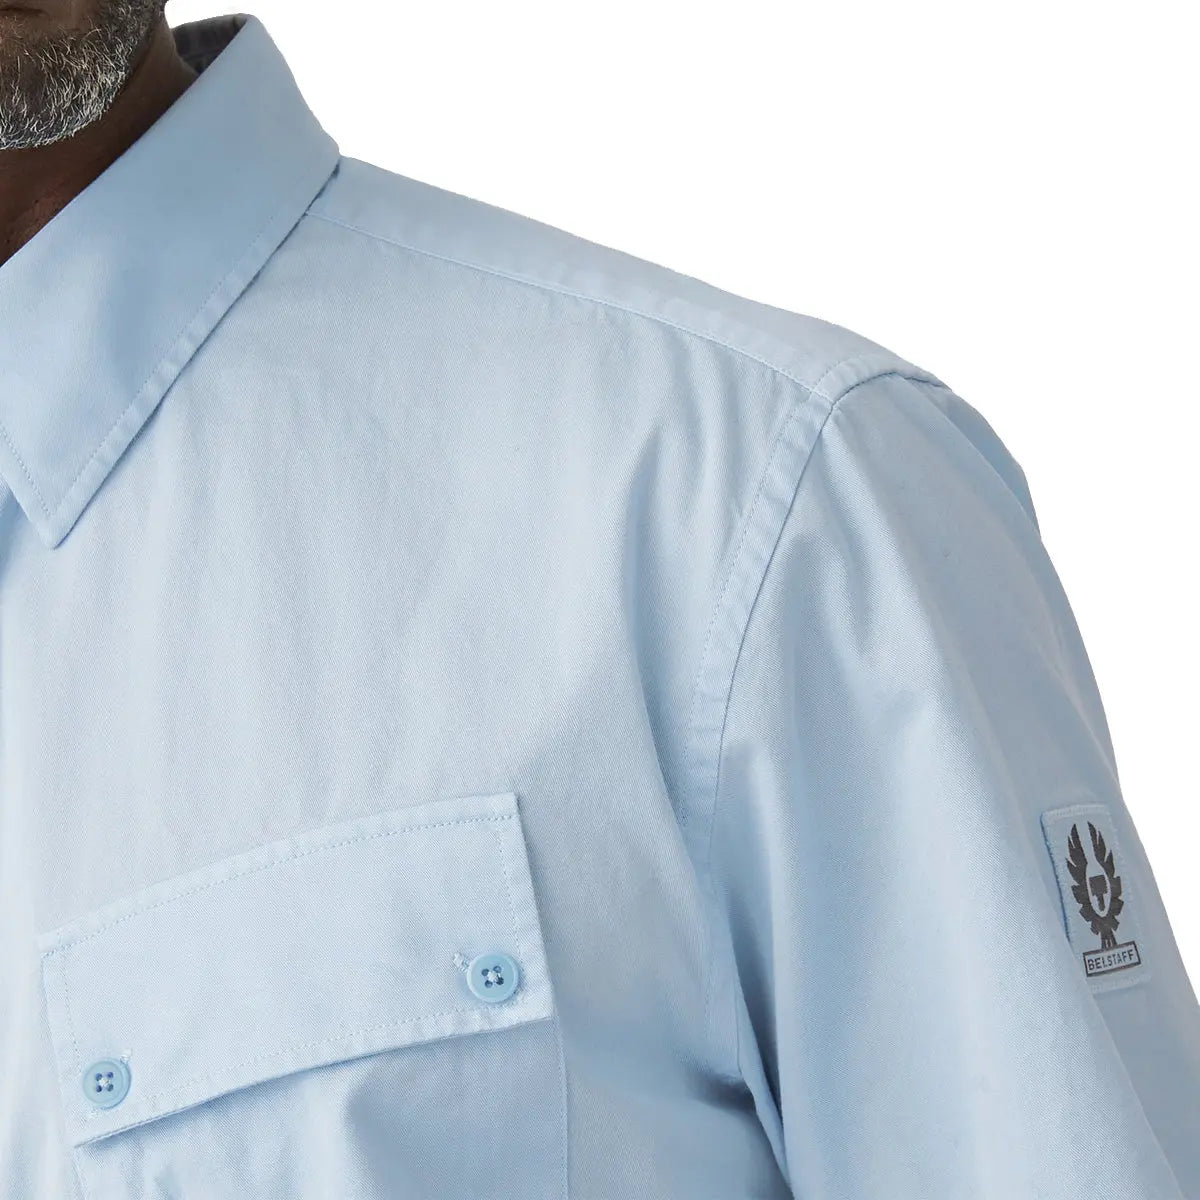 Sky Blue ‘Pitch’ Cotton Twill Short Sleeved Shirt  Belstaff   